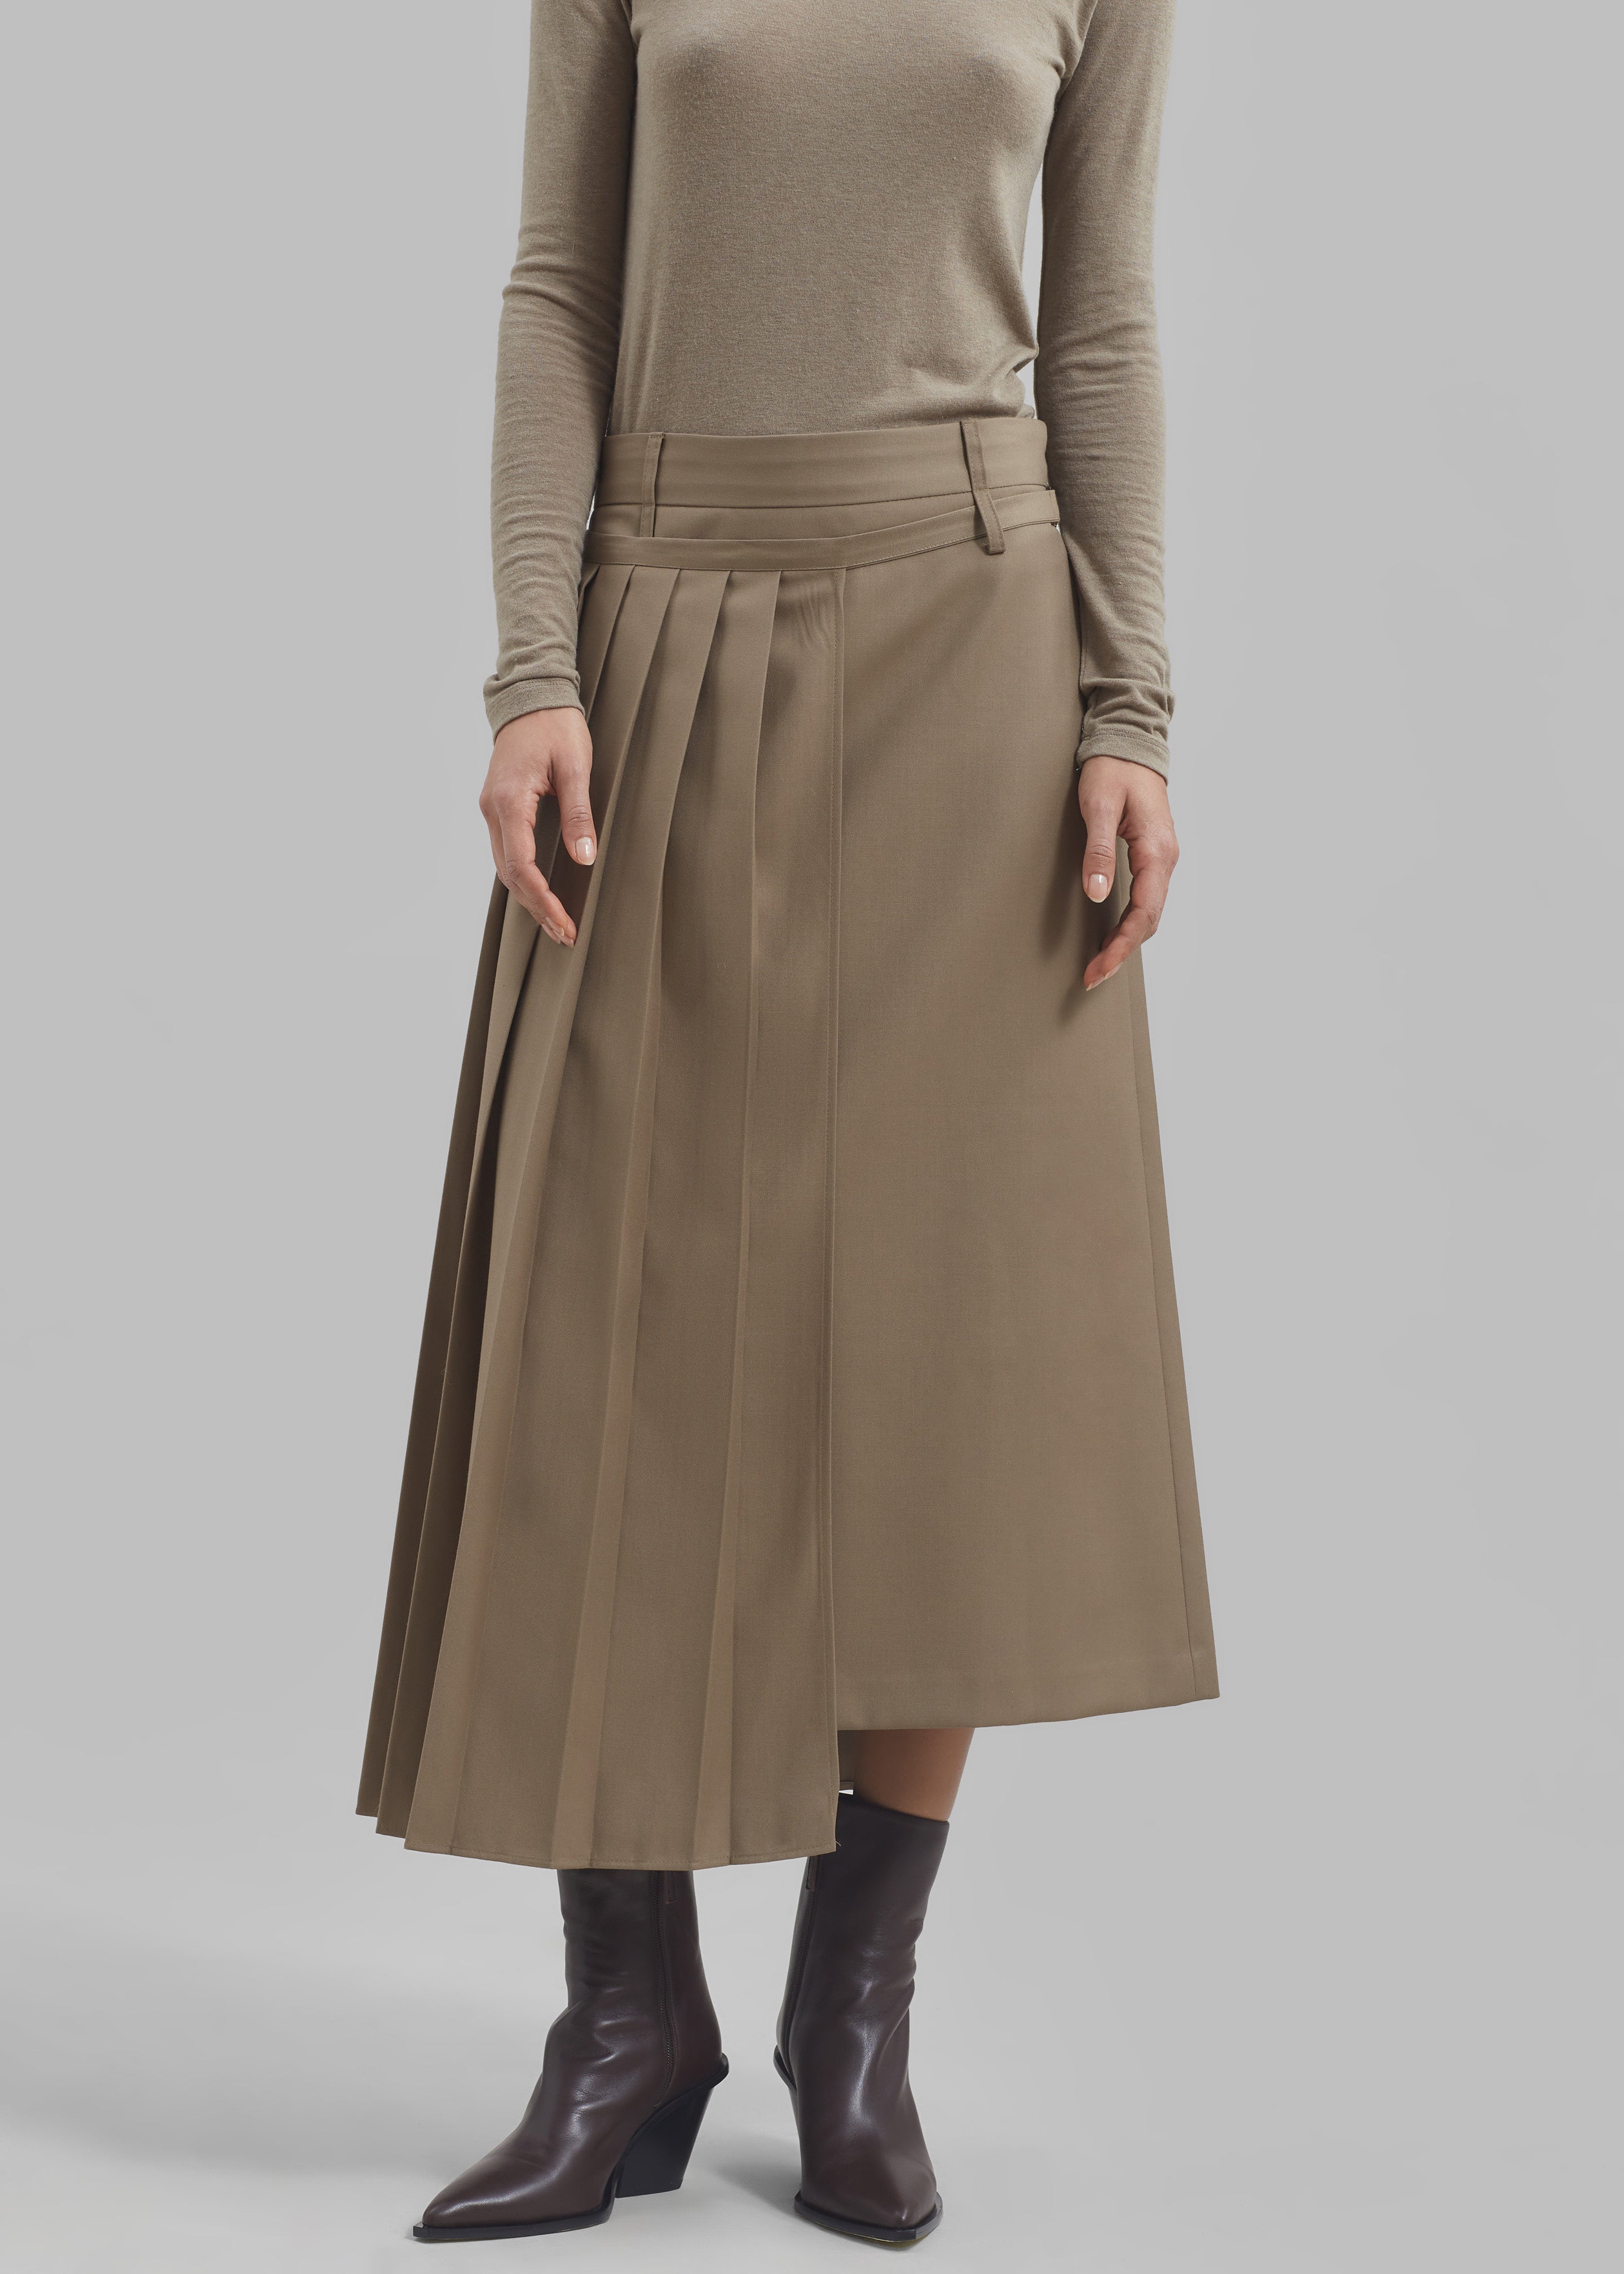 Irie Pleated Skirt - Beige - 2